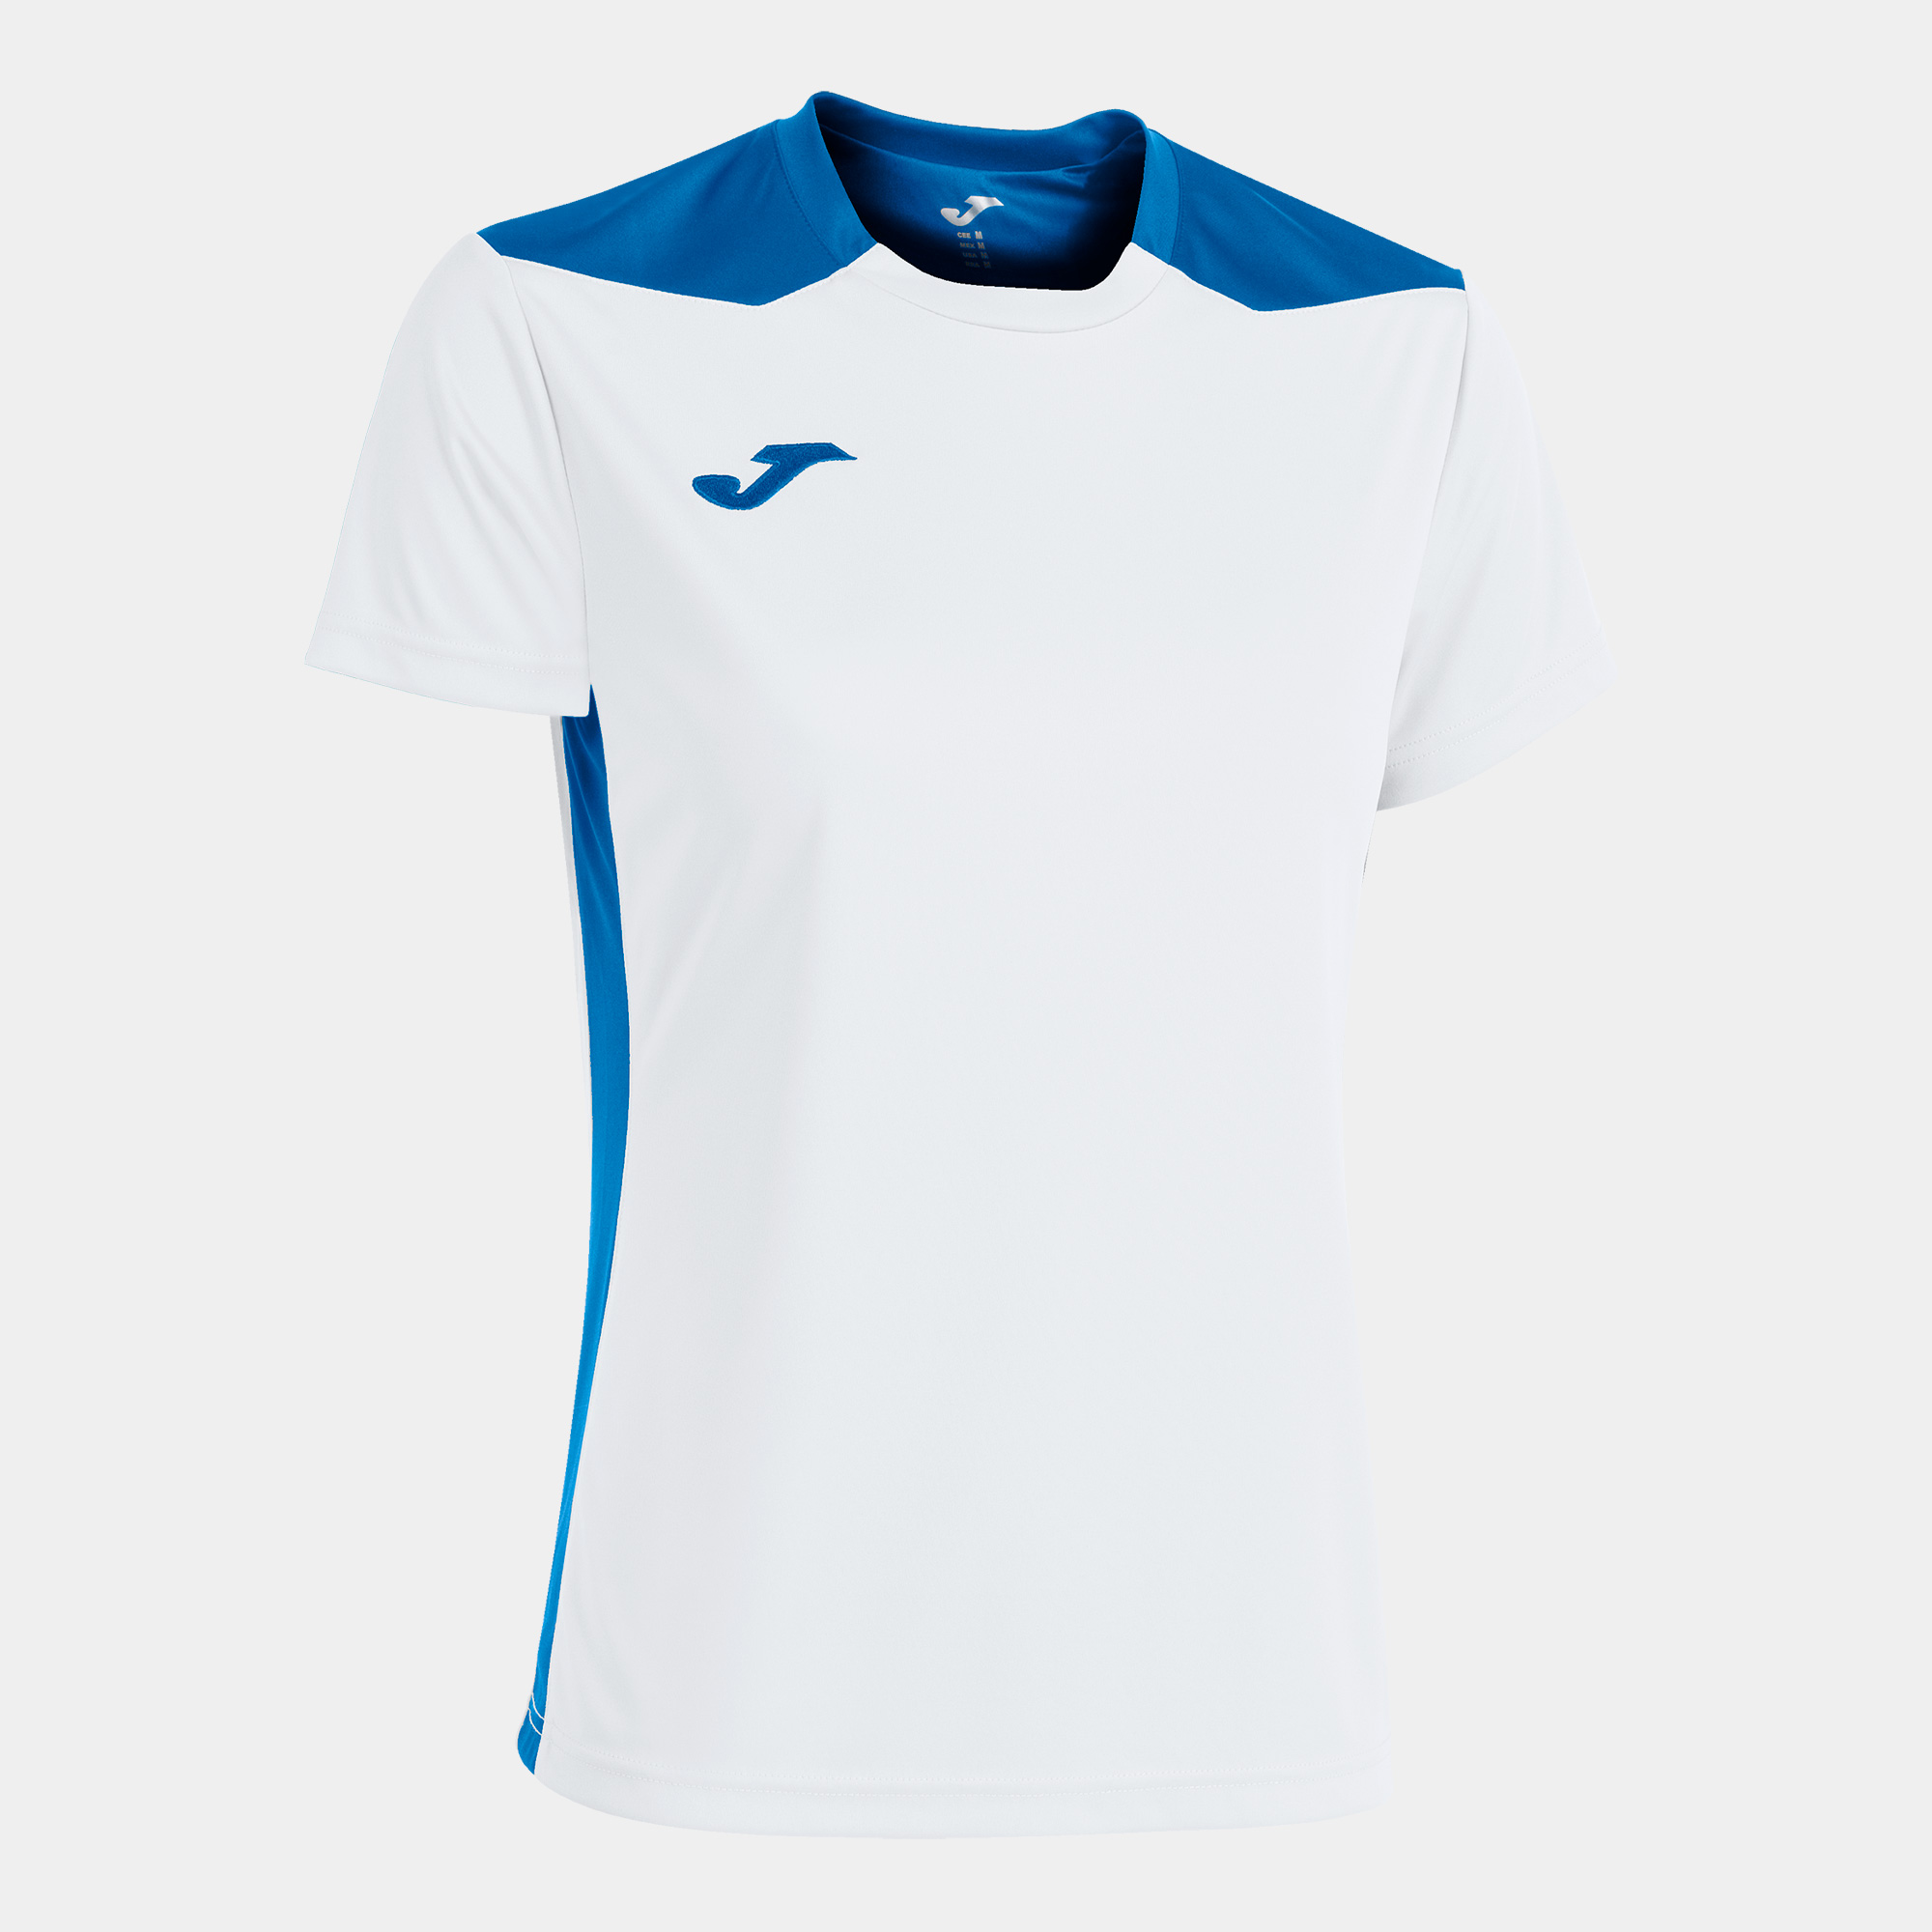 Camiseta Manga Corta Joma Championship Vi - blanco-azul - 